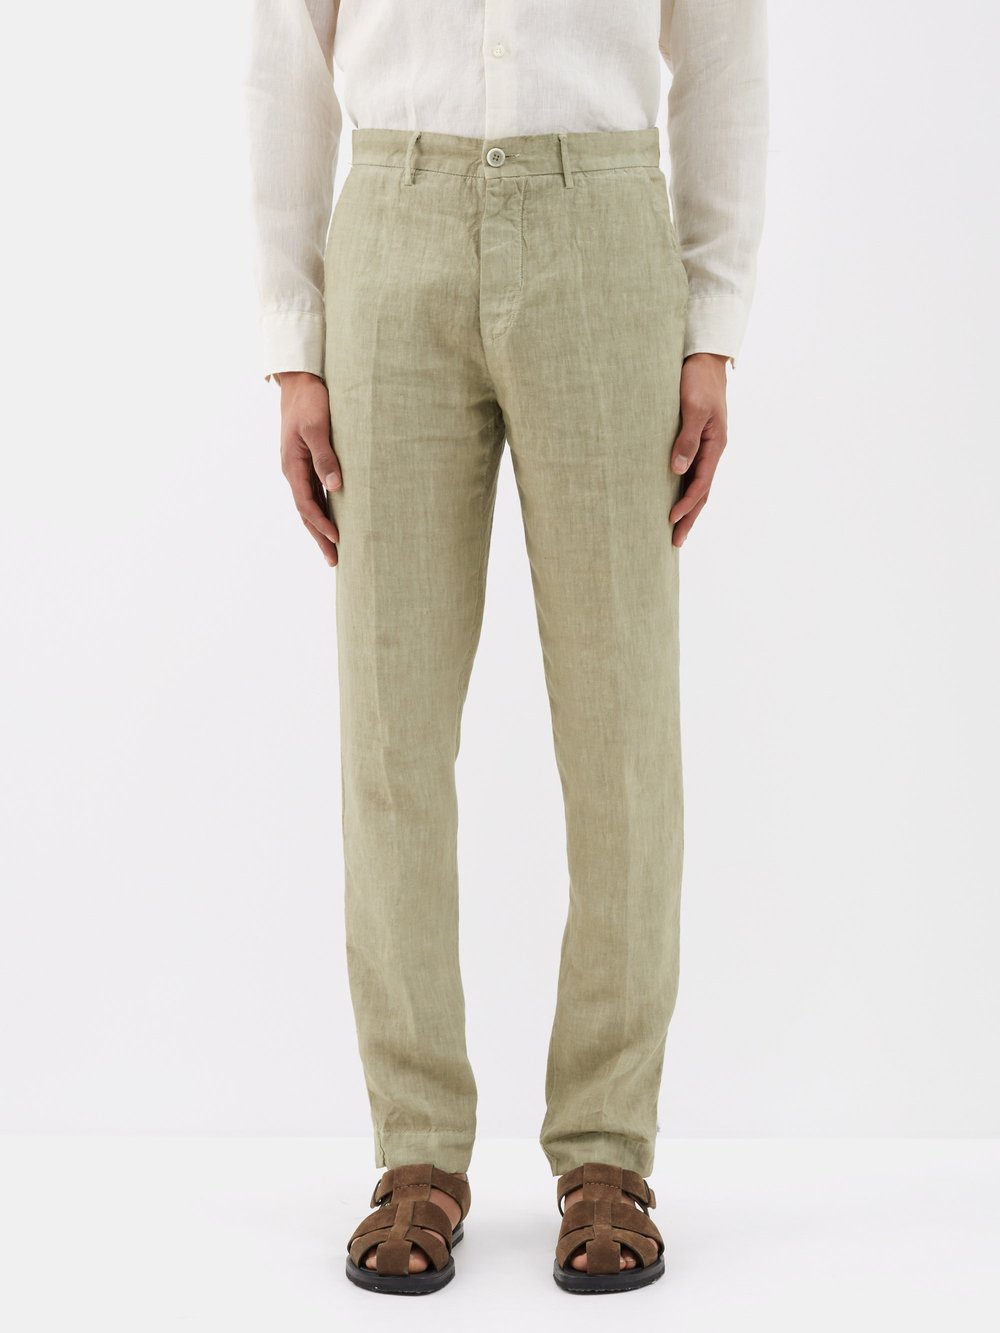 Узкие костюмные брюки из льна 120% Lino, хаки-бежевый